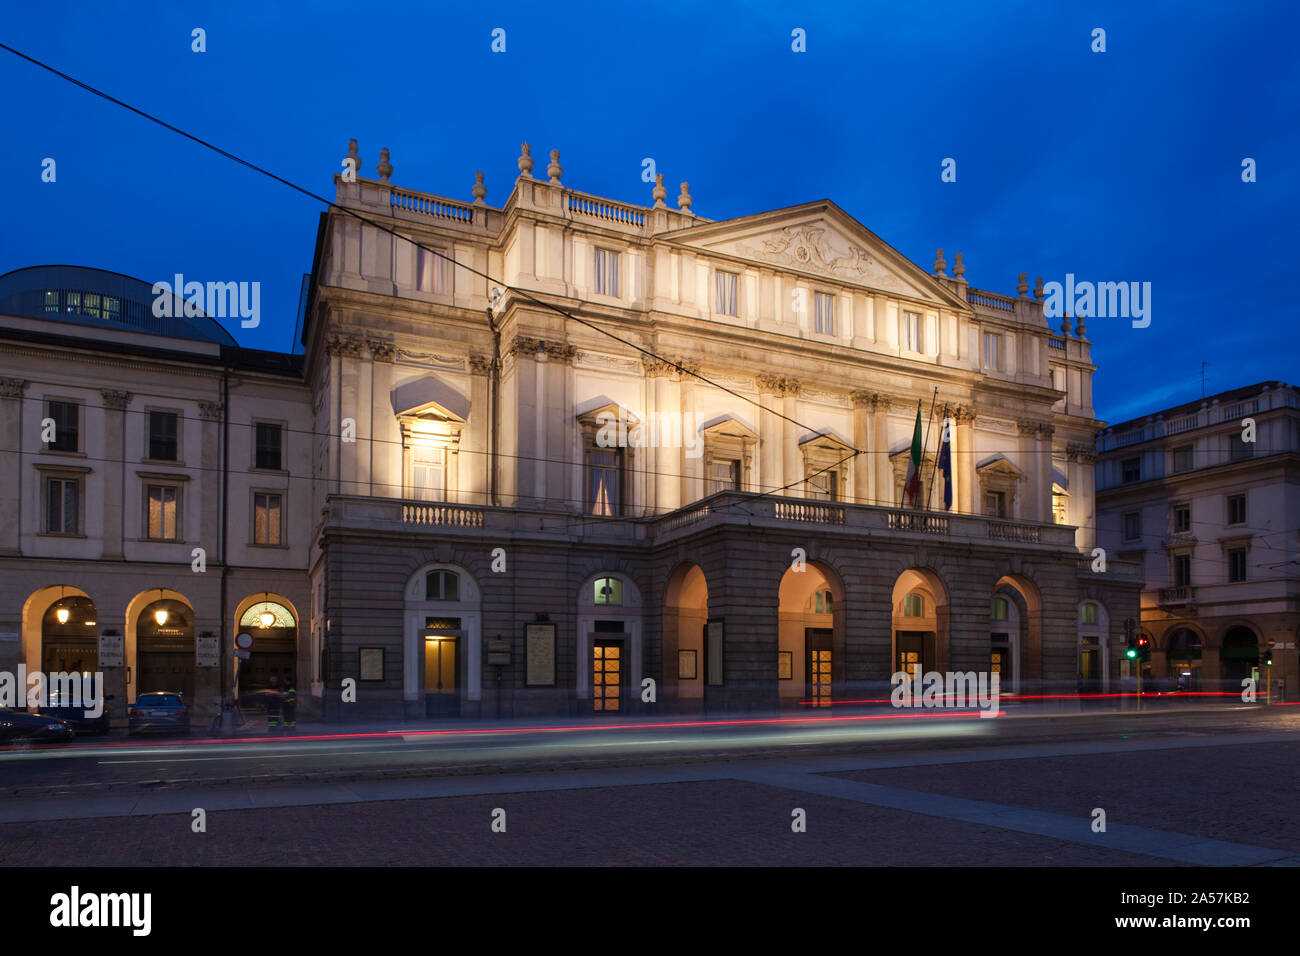 Facciata di un'opera house al tramonto, il Teatro alla Scala di Milano, Lombardia, Italia Foto Stock